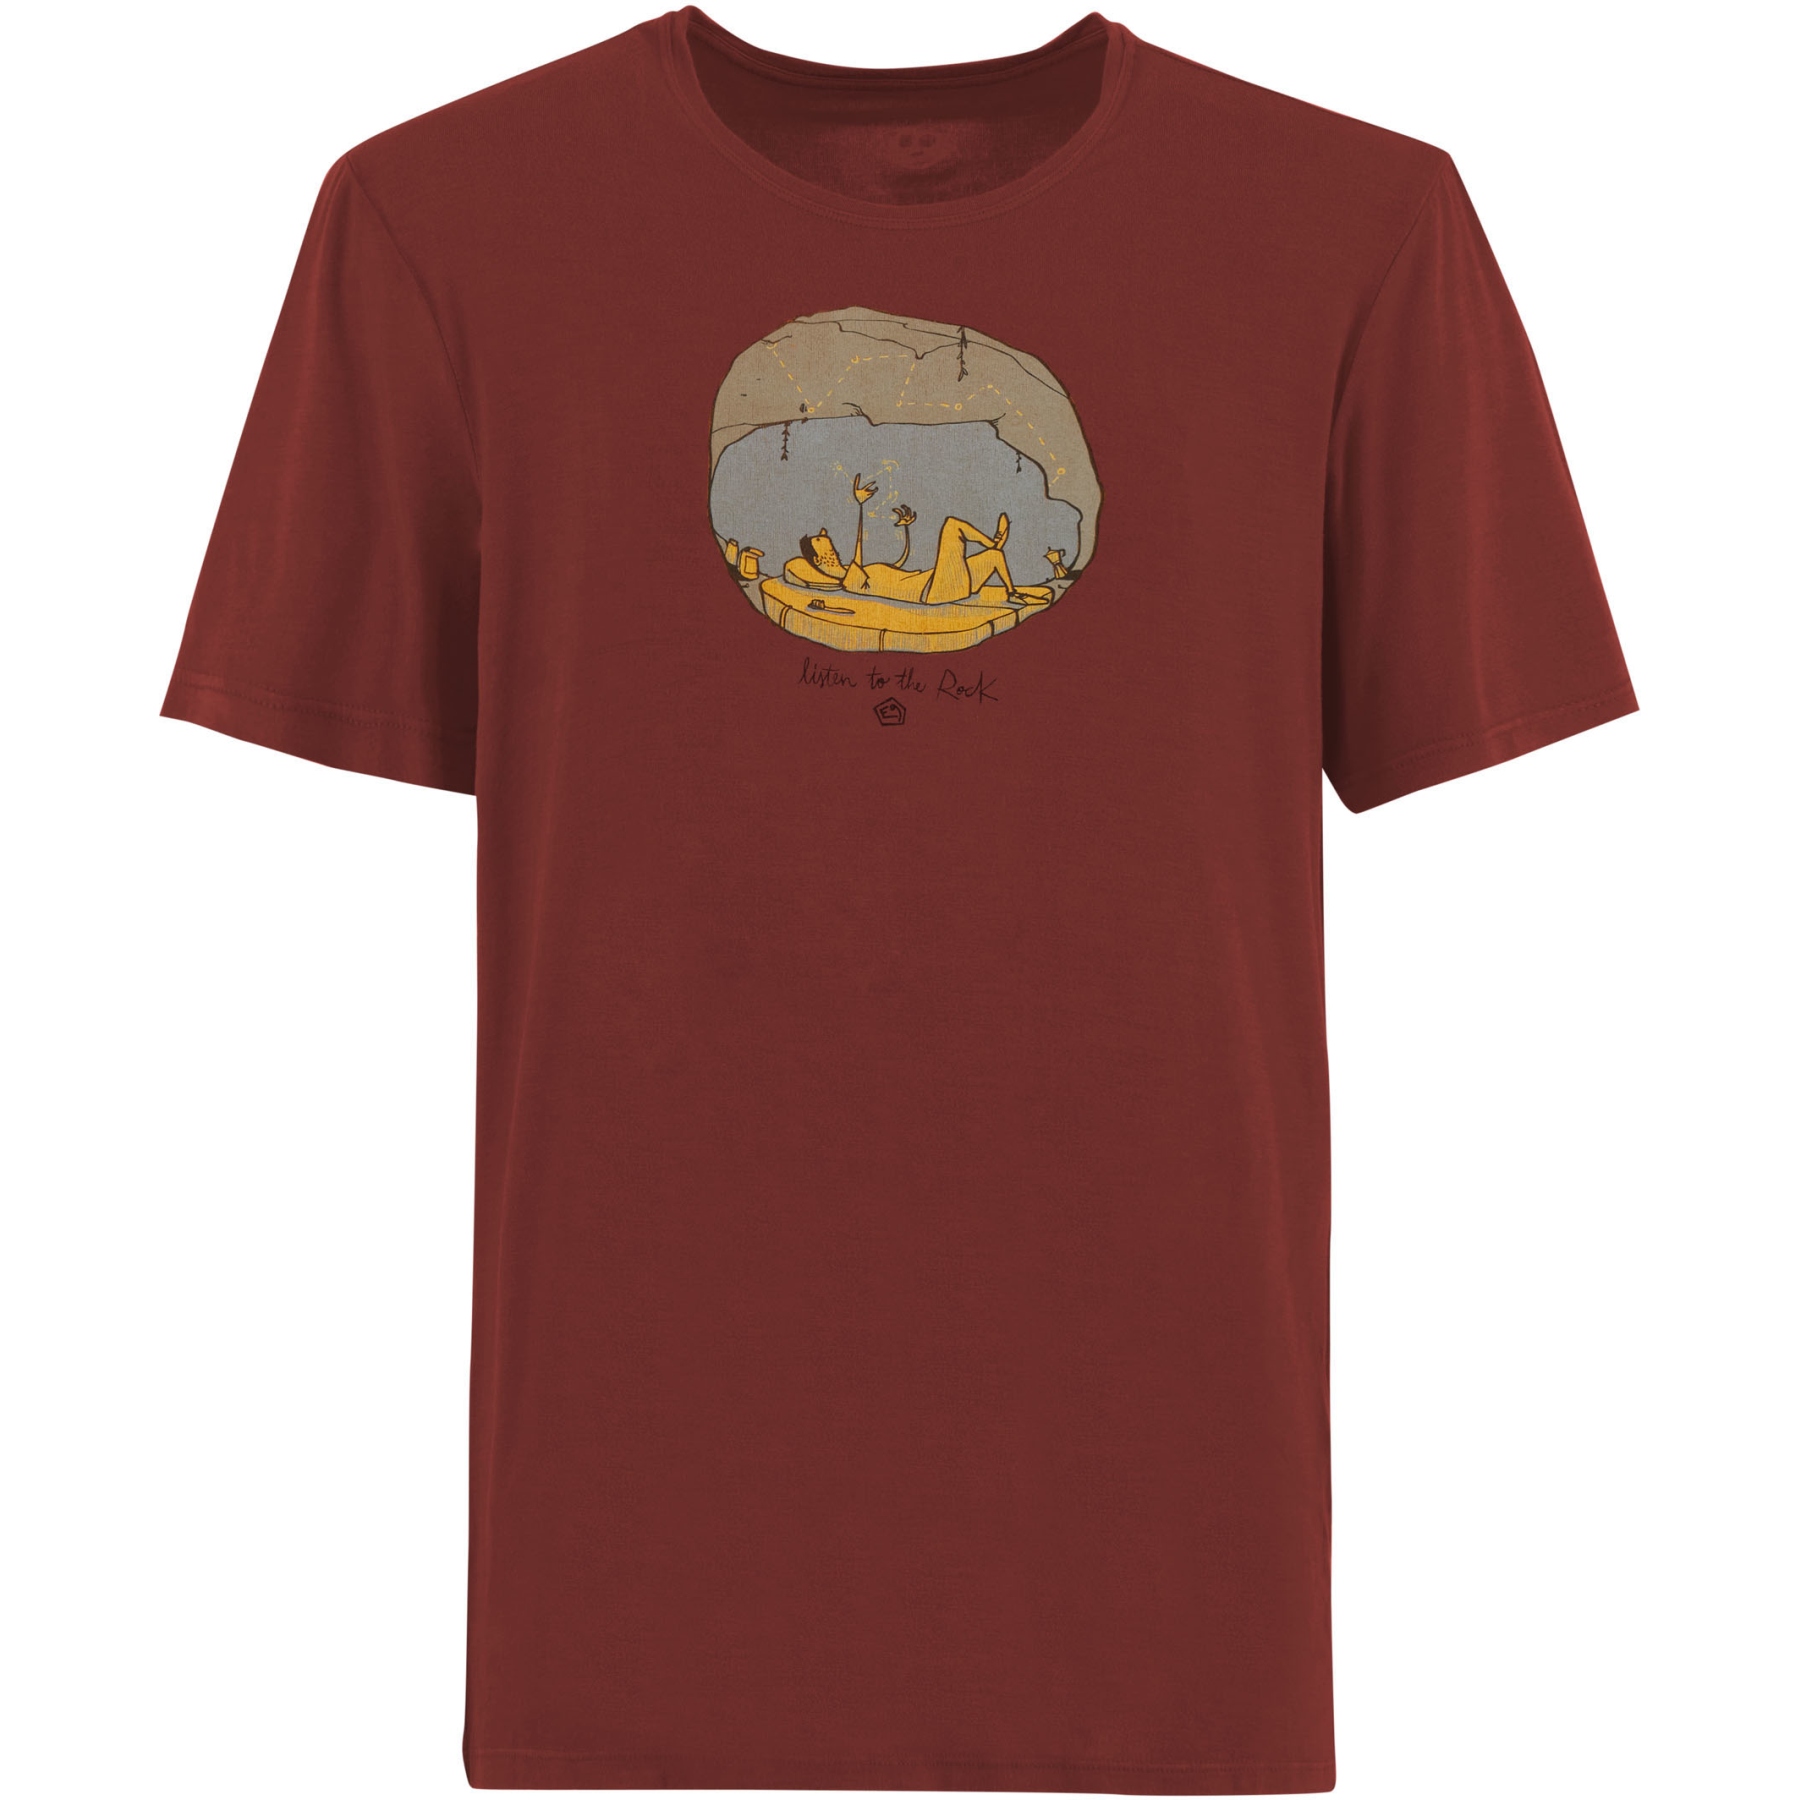 Produktbild von E9 Cave T-Shirt Herren - Paprika